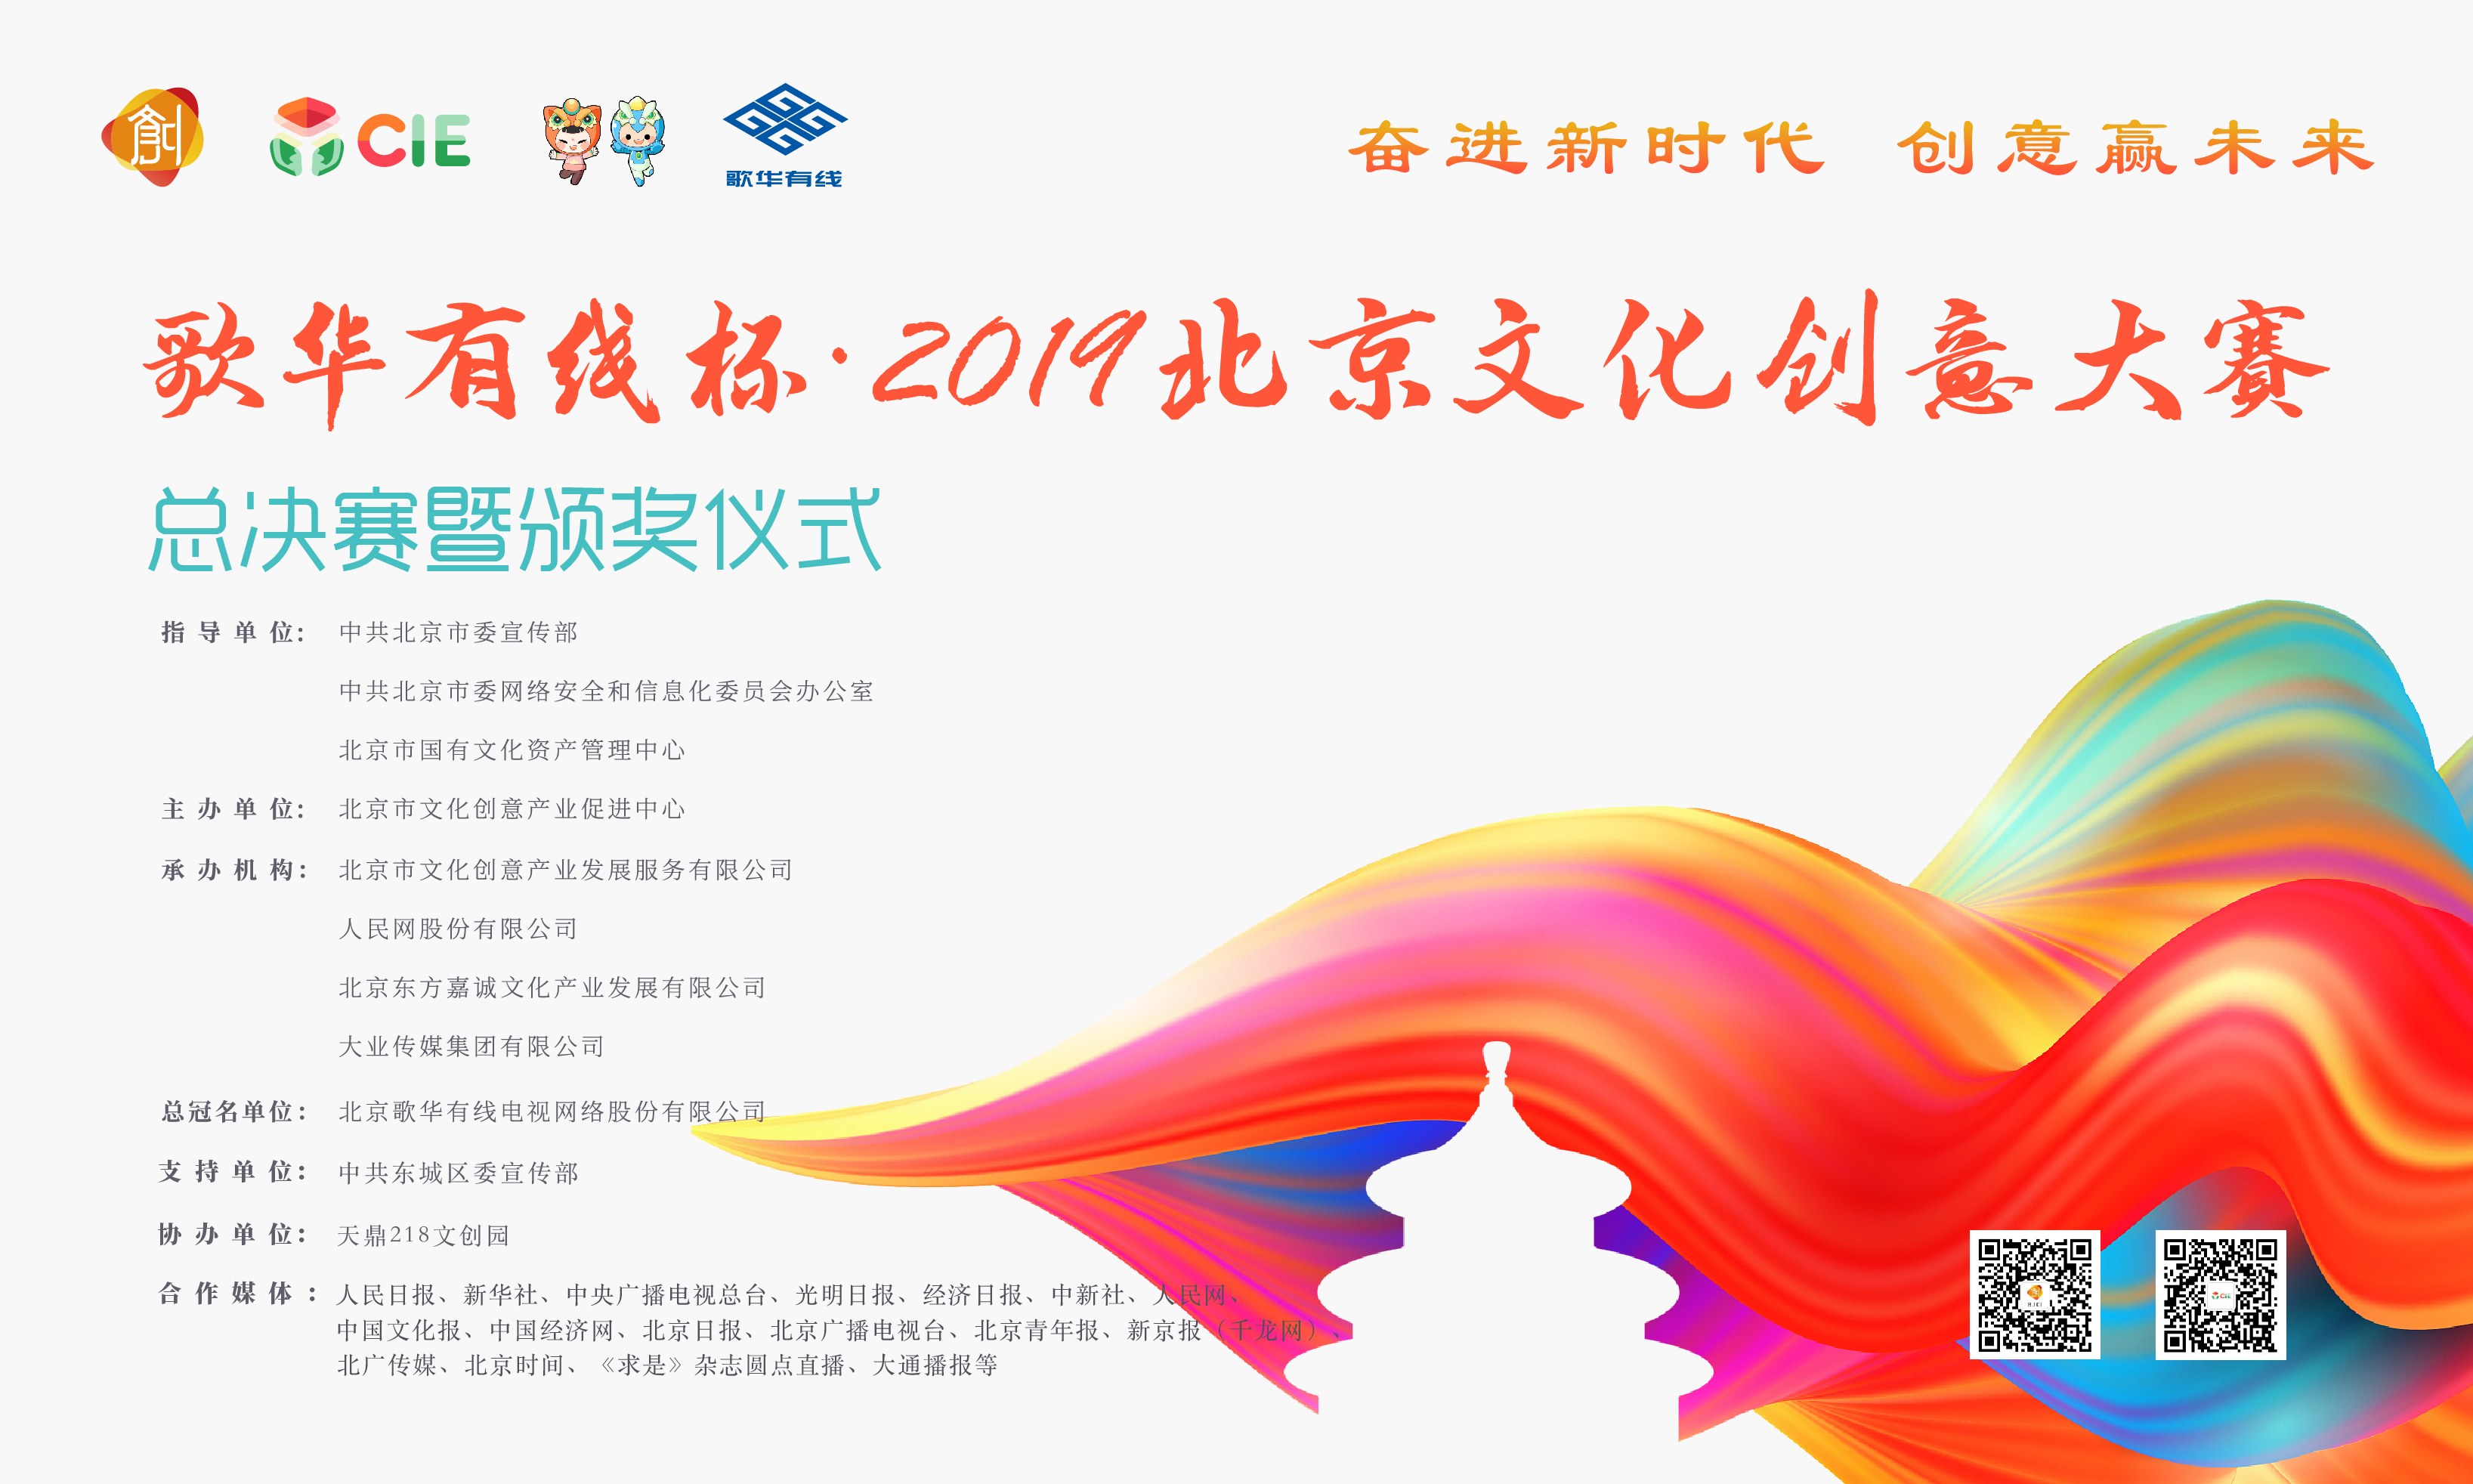 歌华有线杯·2019北京文化创意大赛总决赛（B场上）